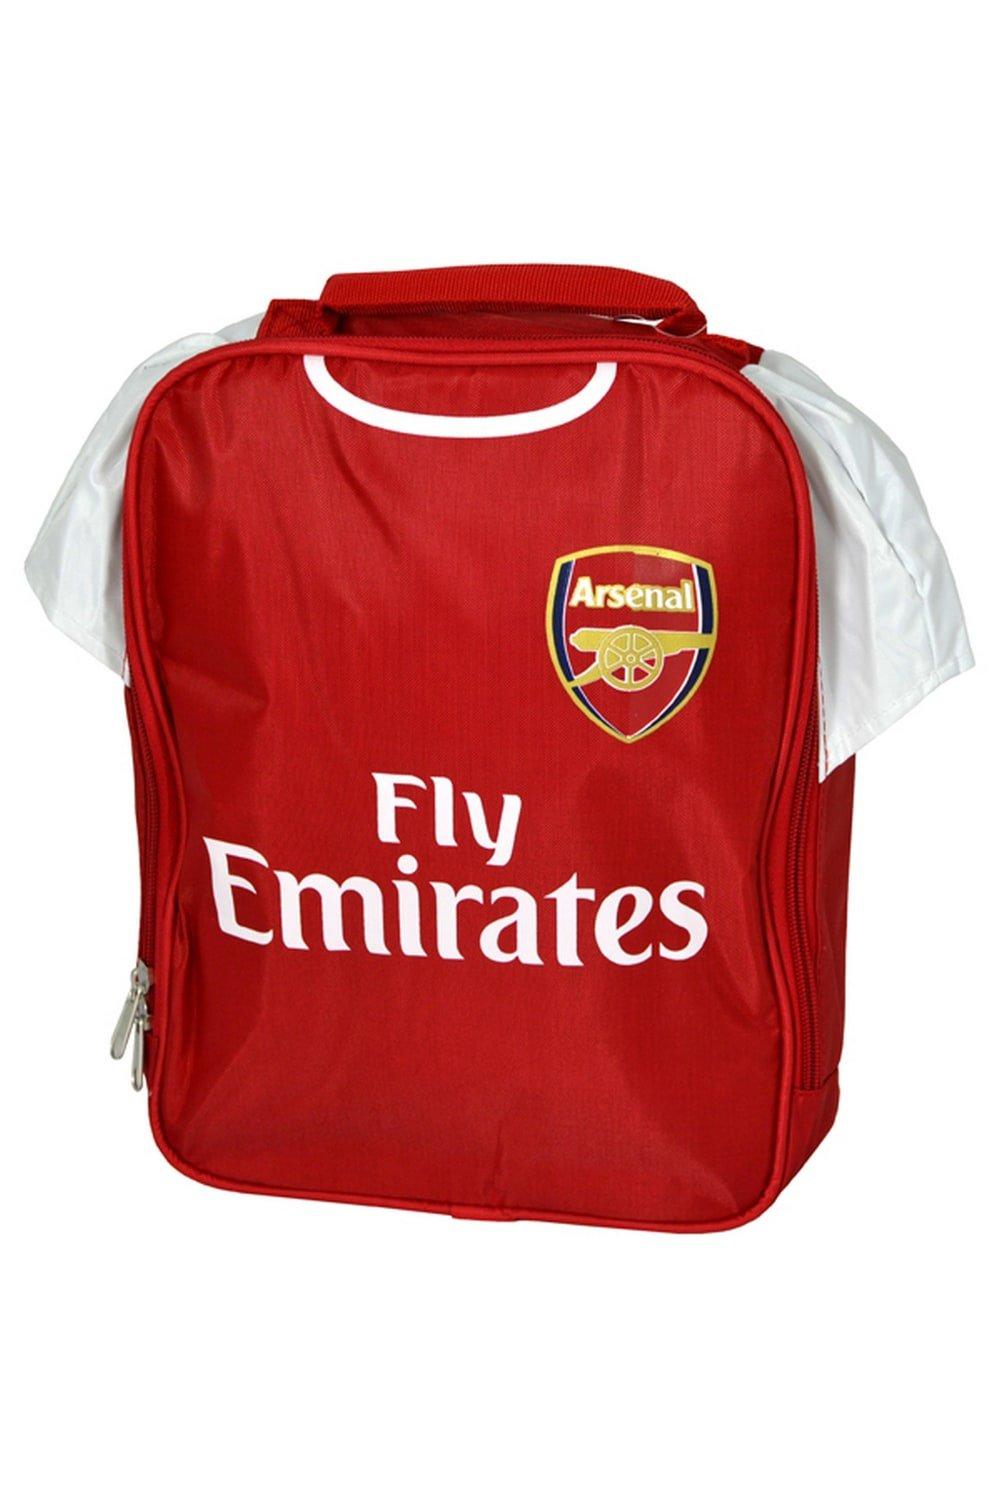 Официальная сумка для обеда с дизайном комплекта Arsenal FC, красный органайзер fit 65646 29 5 х 22 х 7 6 см двухсторонний